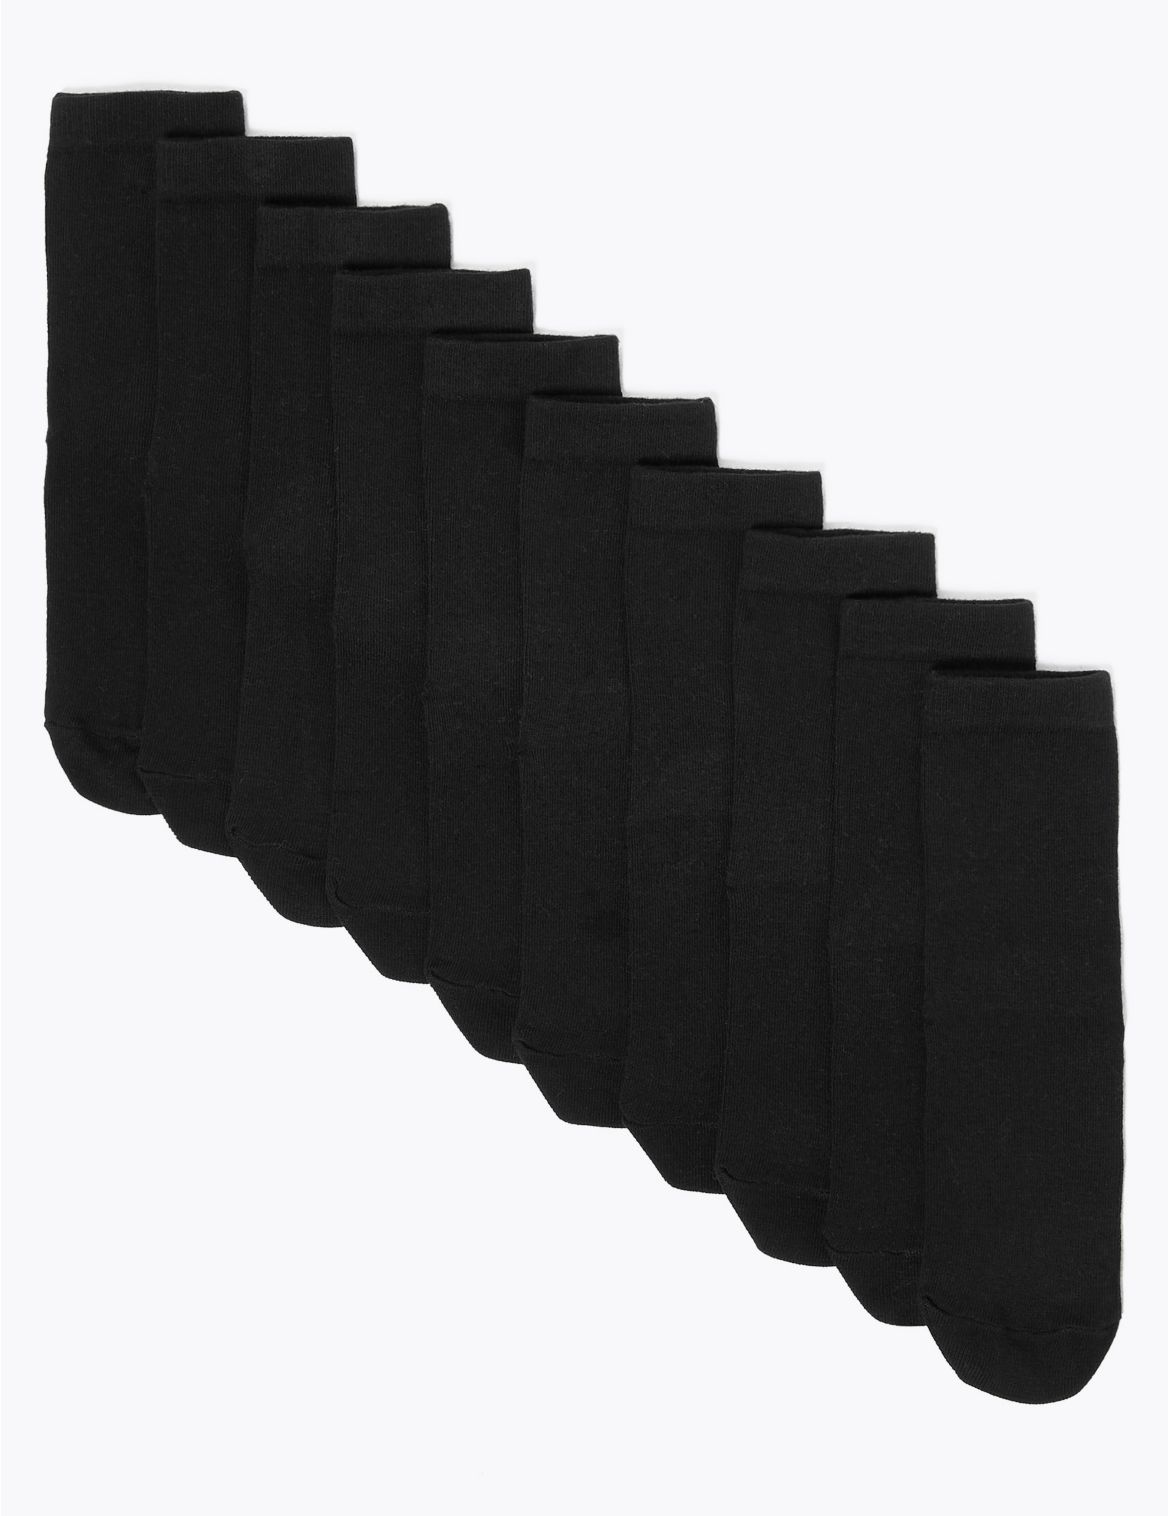 10pk Cotton School Socks black